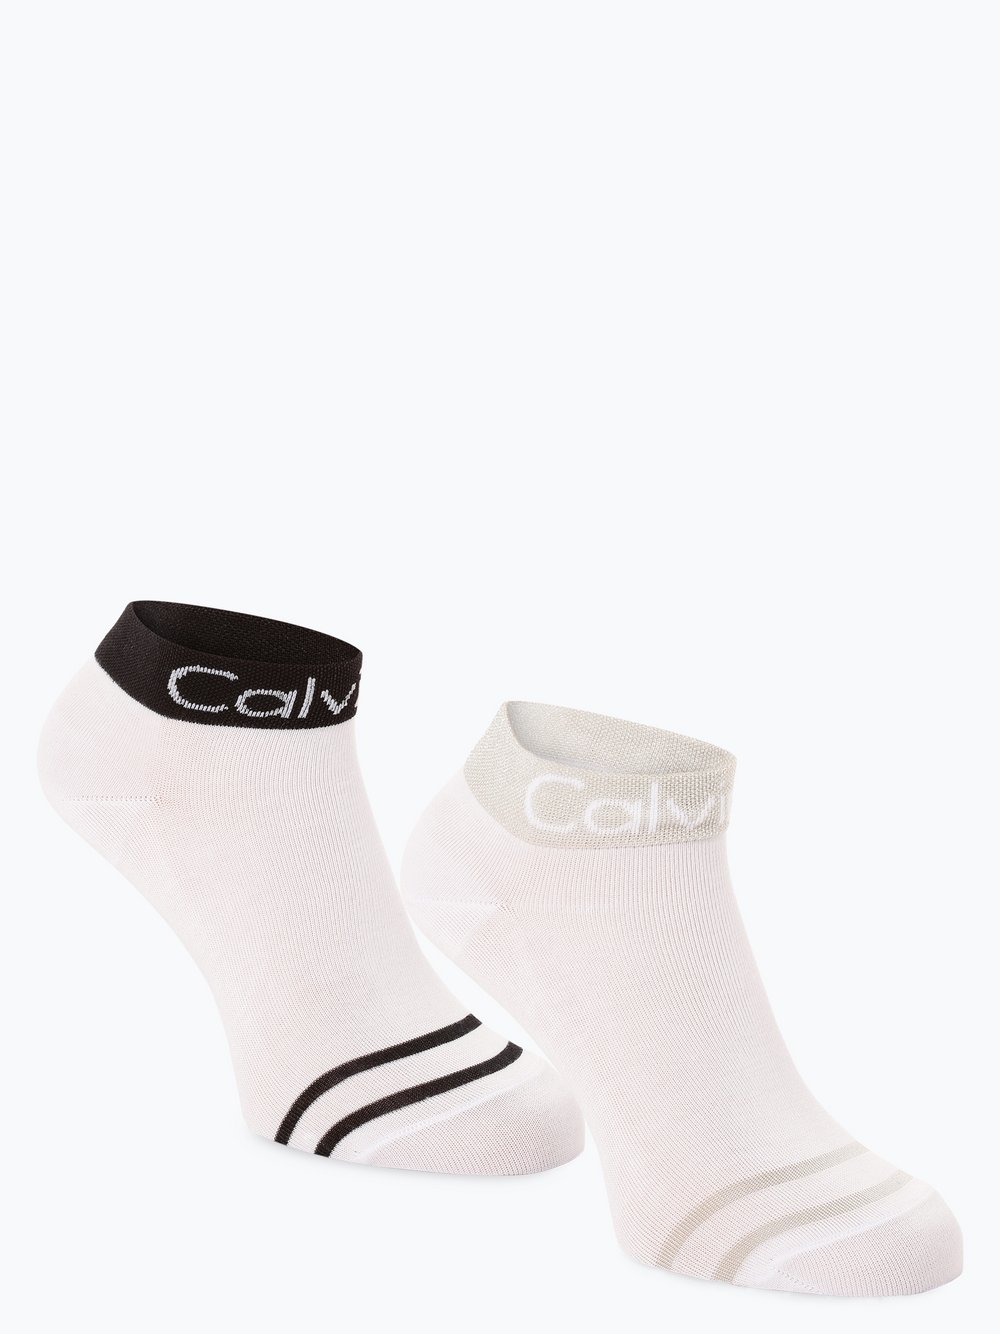 Calvin Klein - Skarpety damskie pakowane po 2 szt., biały